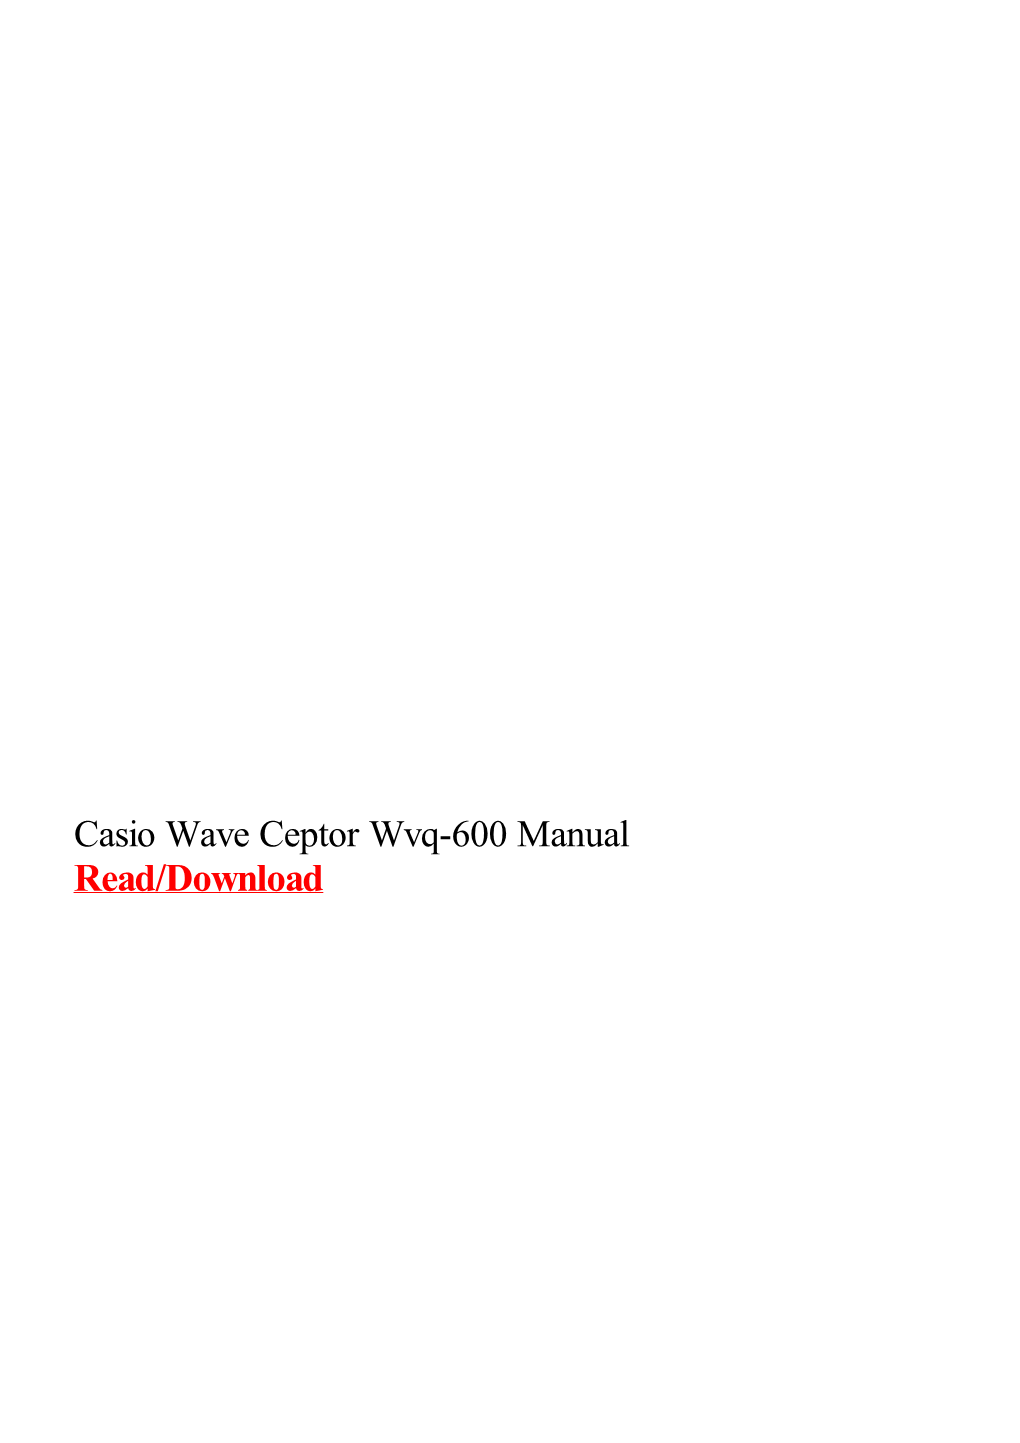 Casio Wave Ceptor Wvq-600 Manual